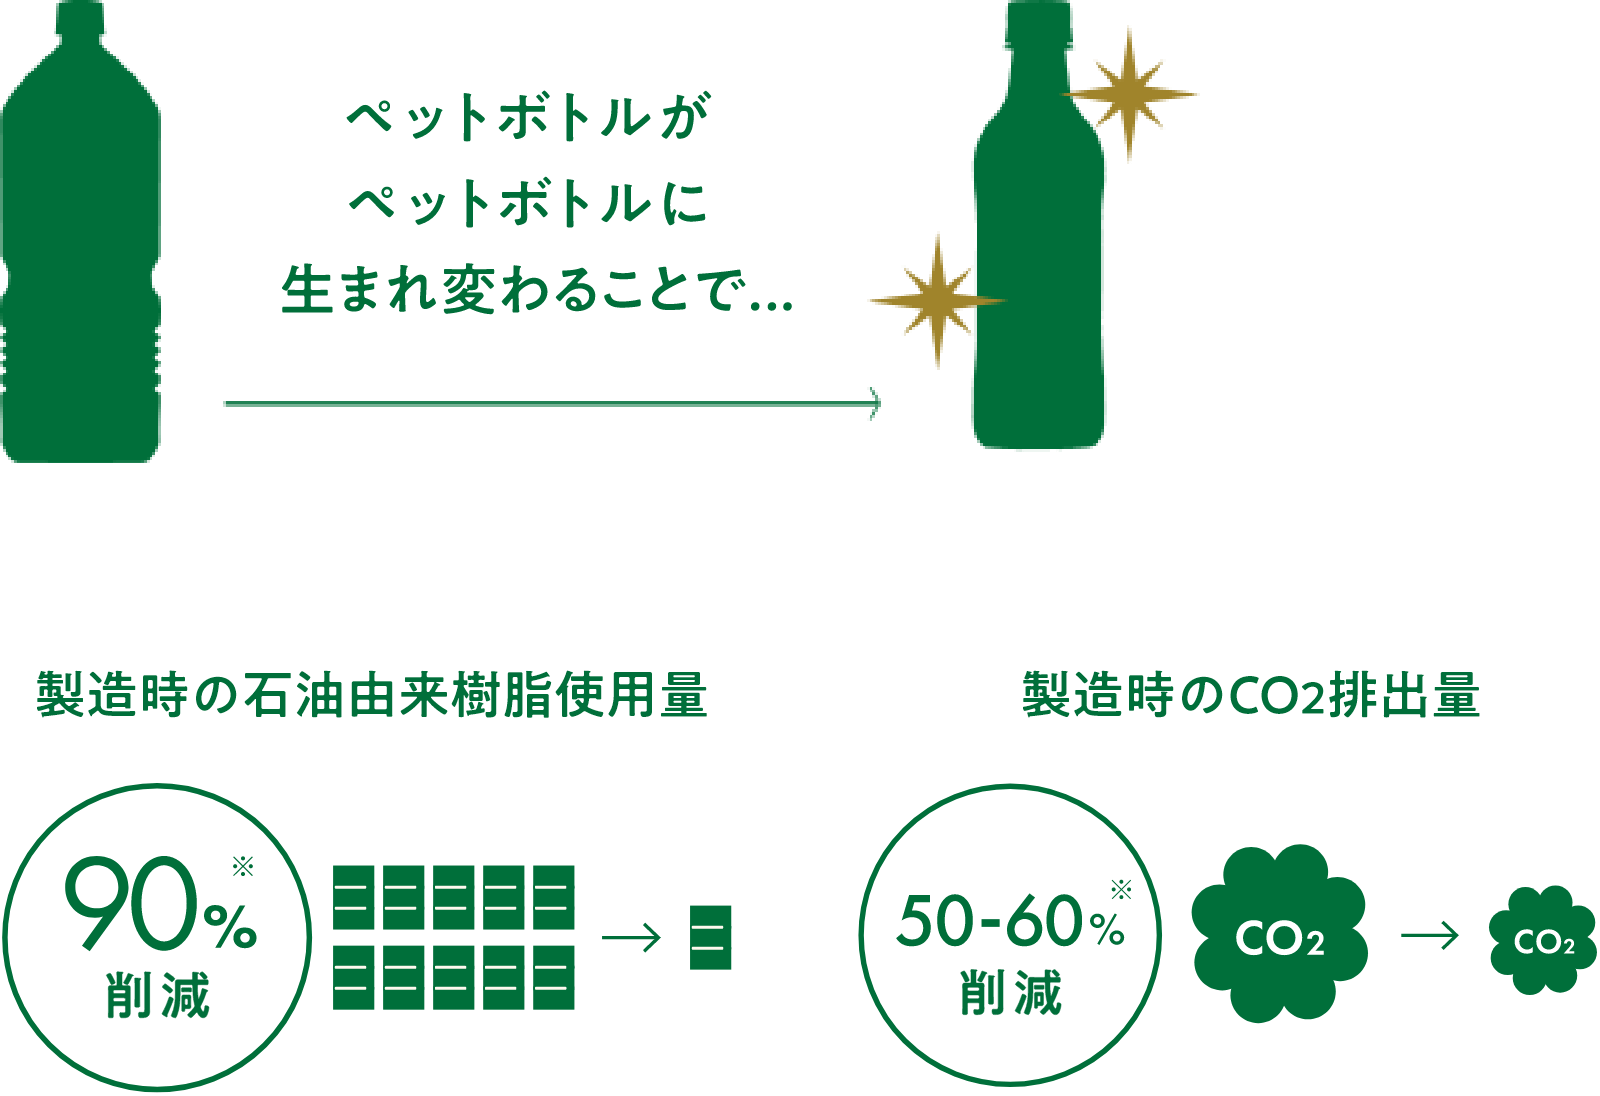 ペットボトルがペットボトルに生まれ変わることで 製造時の石油由来樹脂使用量 90%削減 製造時のCO2排出量 50~60%※削減